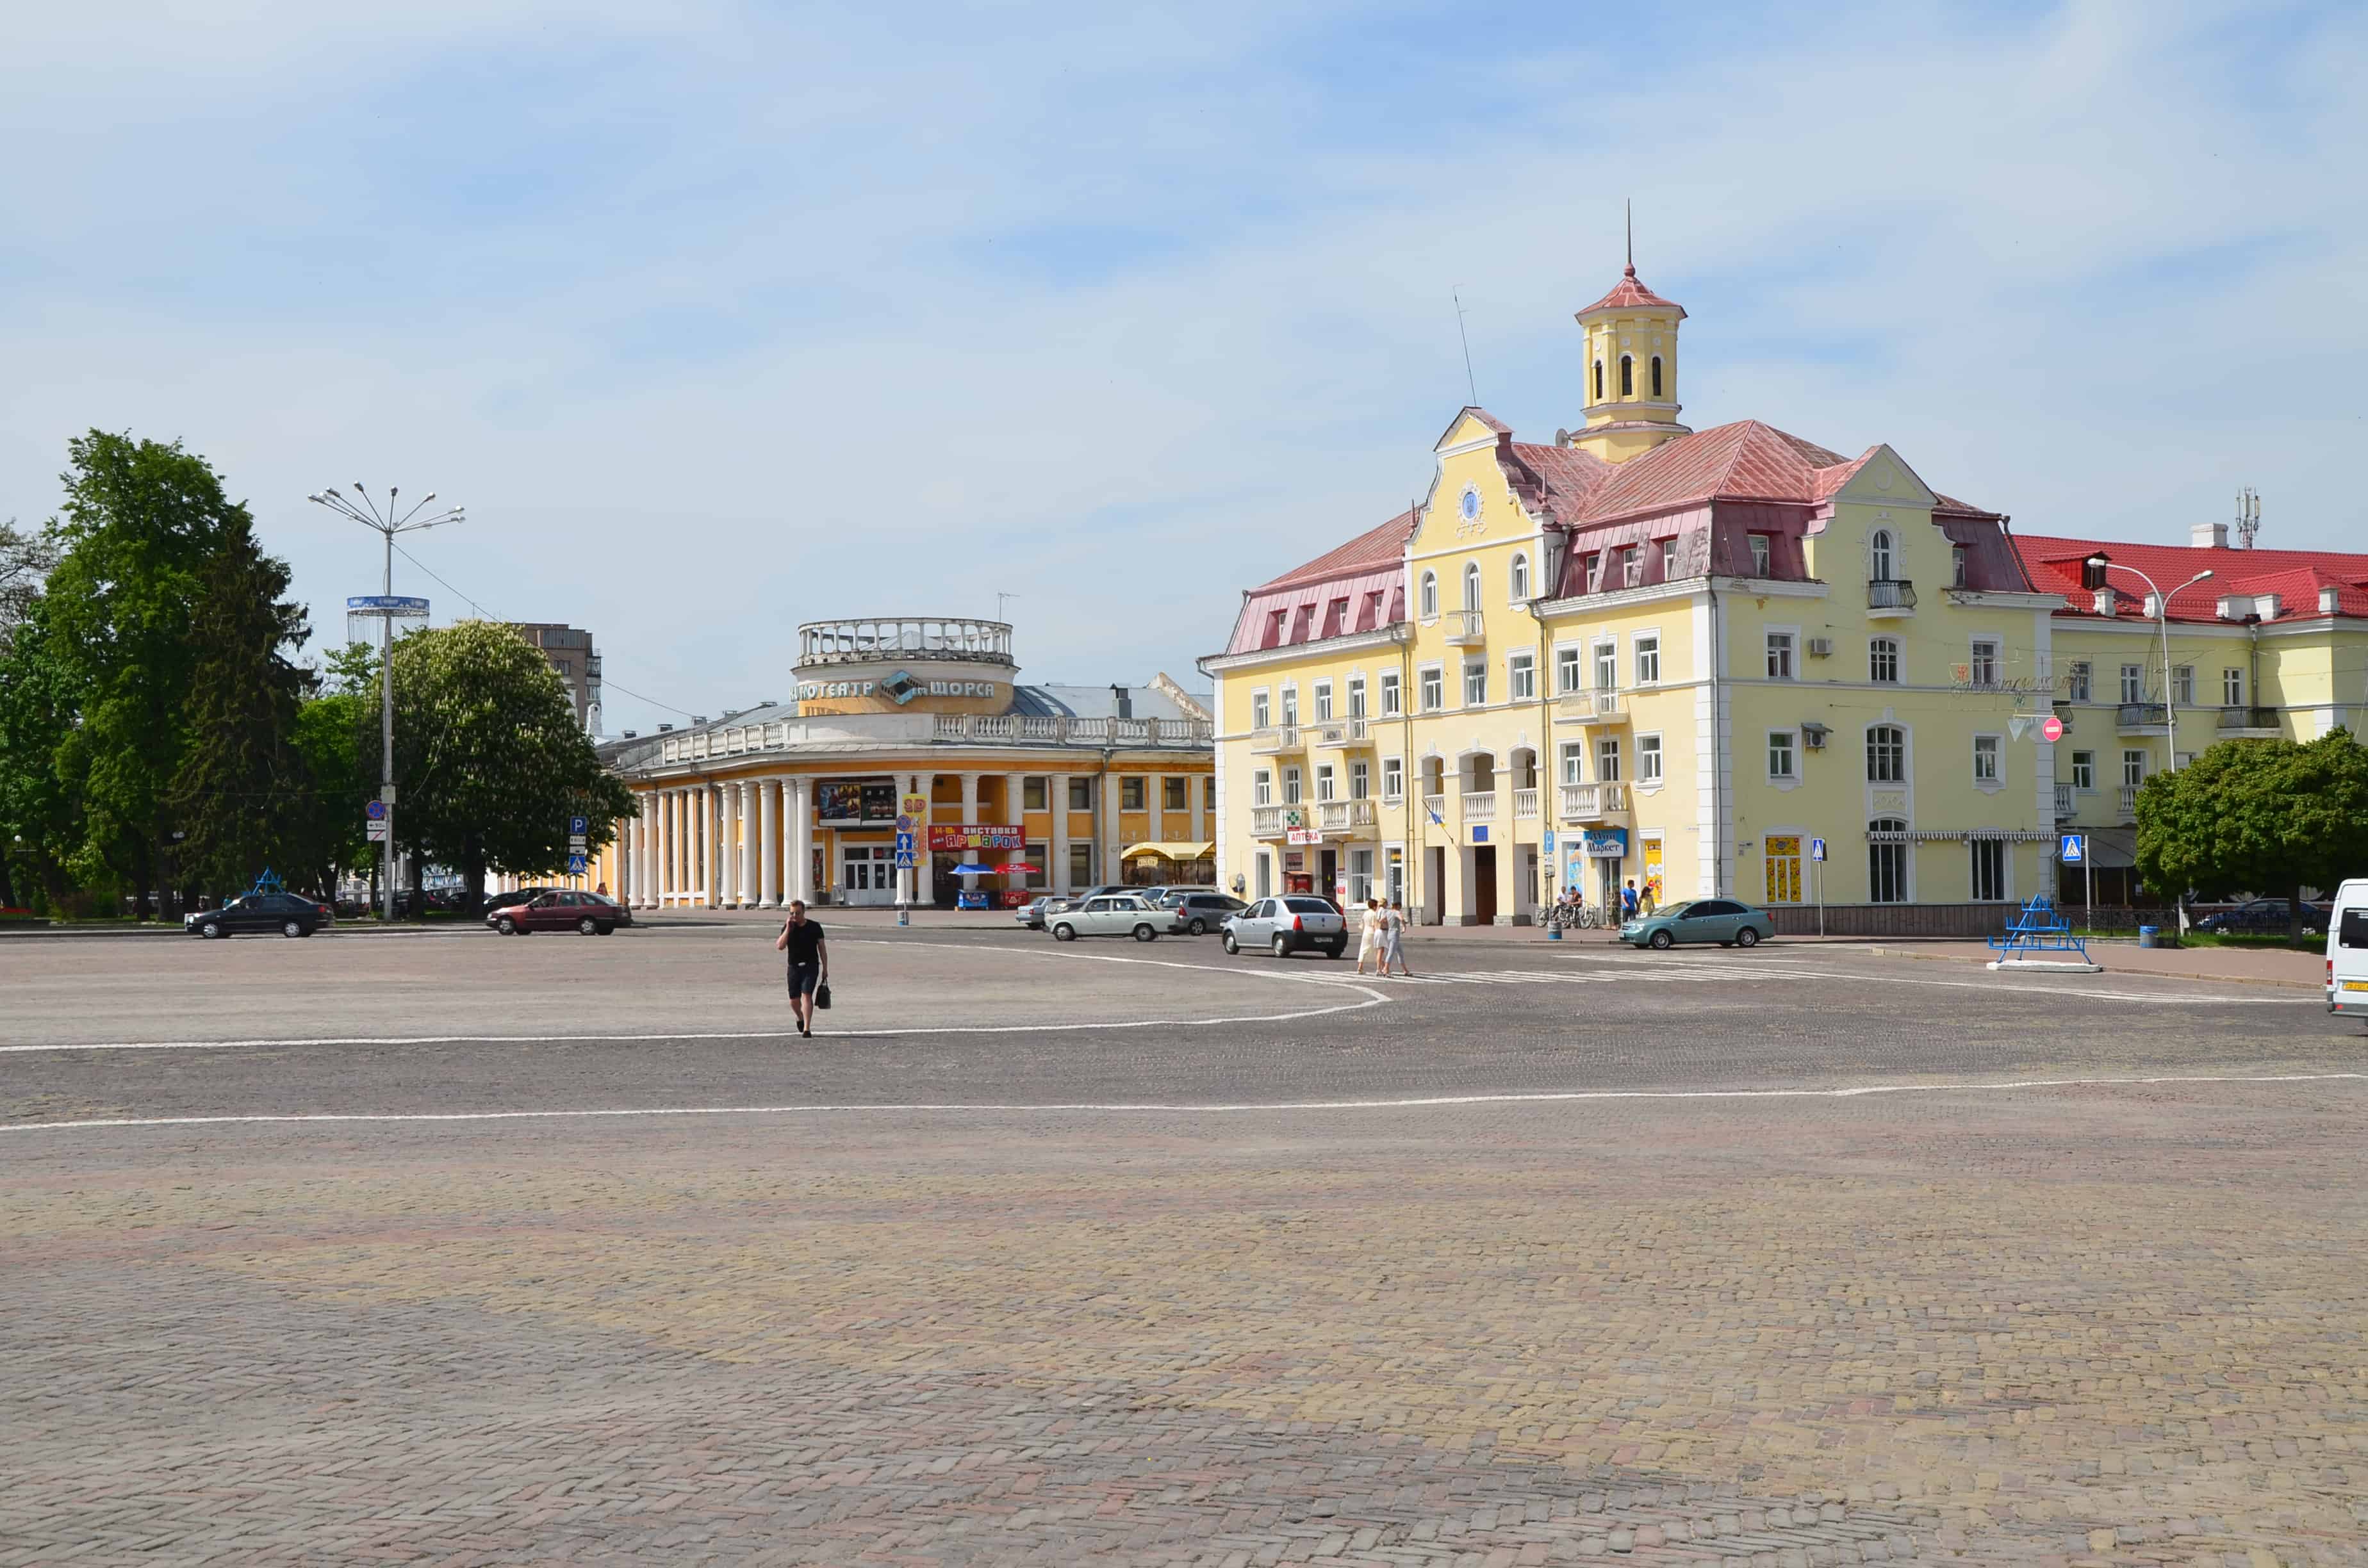 Krasna Square in Chernihiv, Ukraine